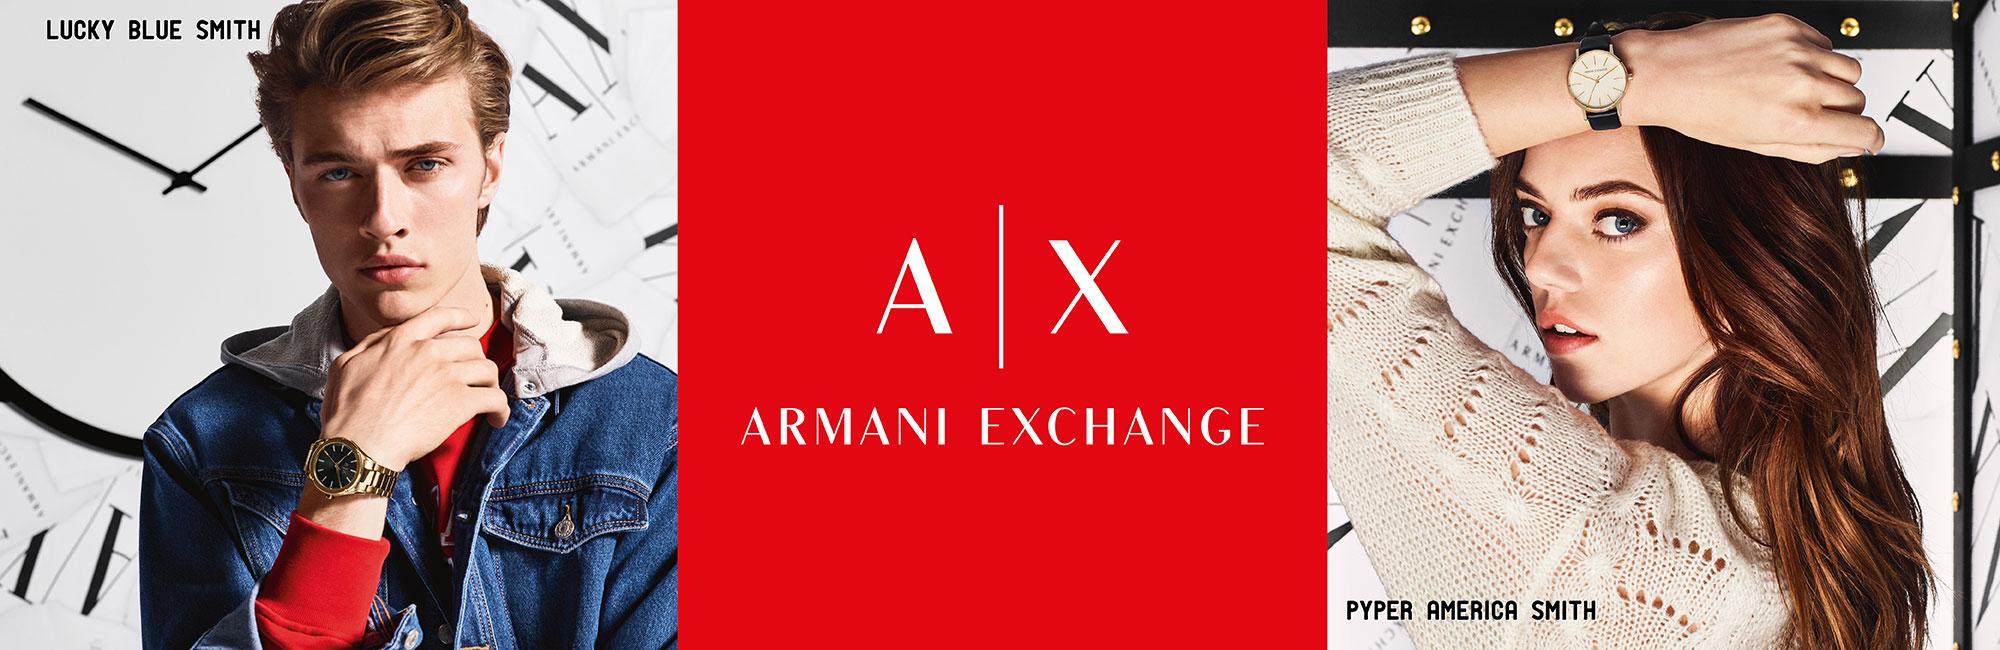 armani exchange parent company